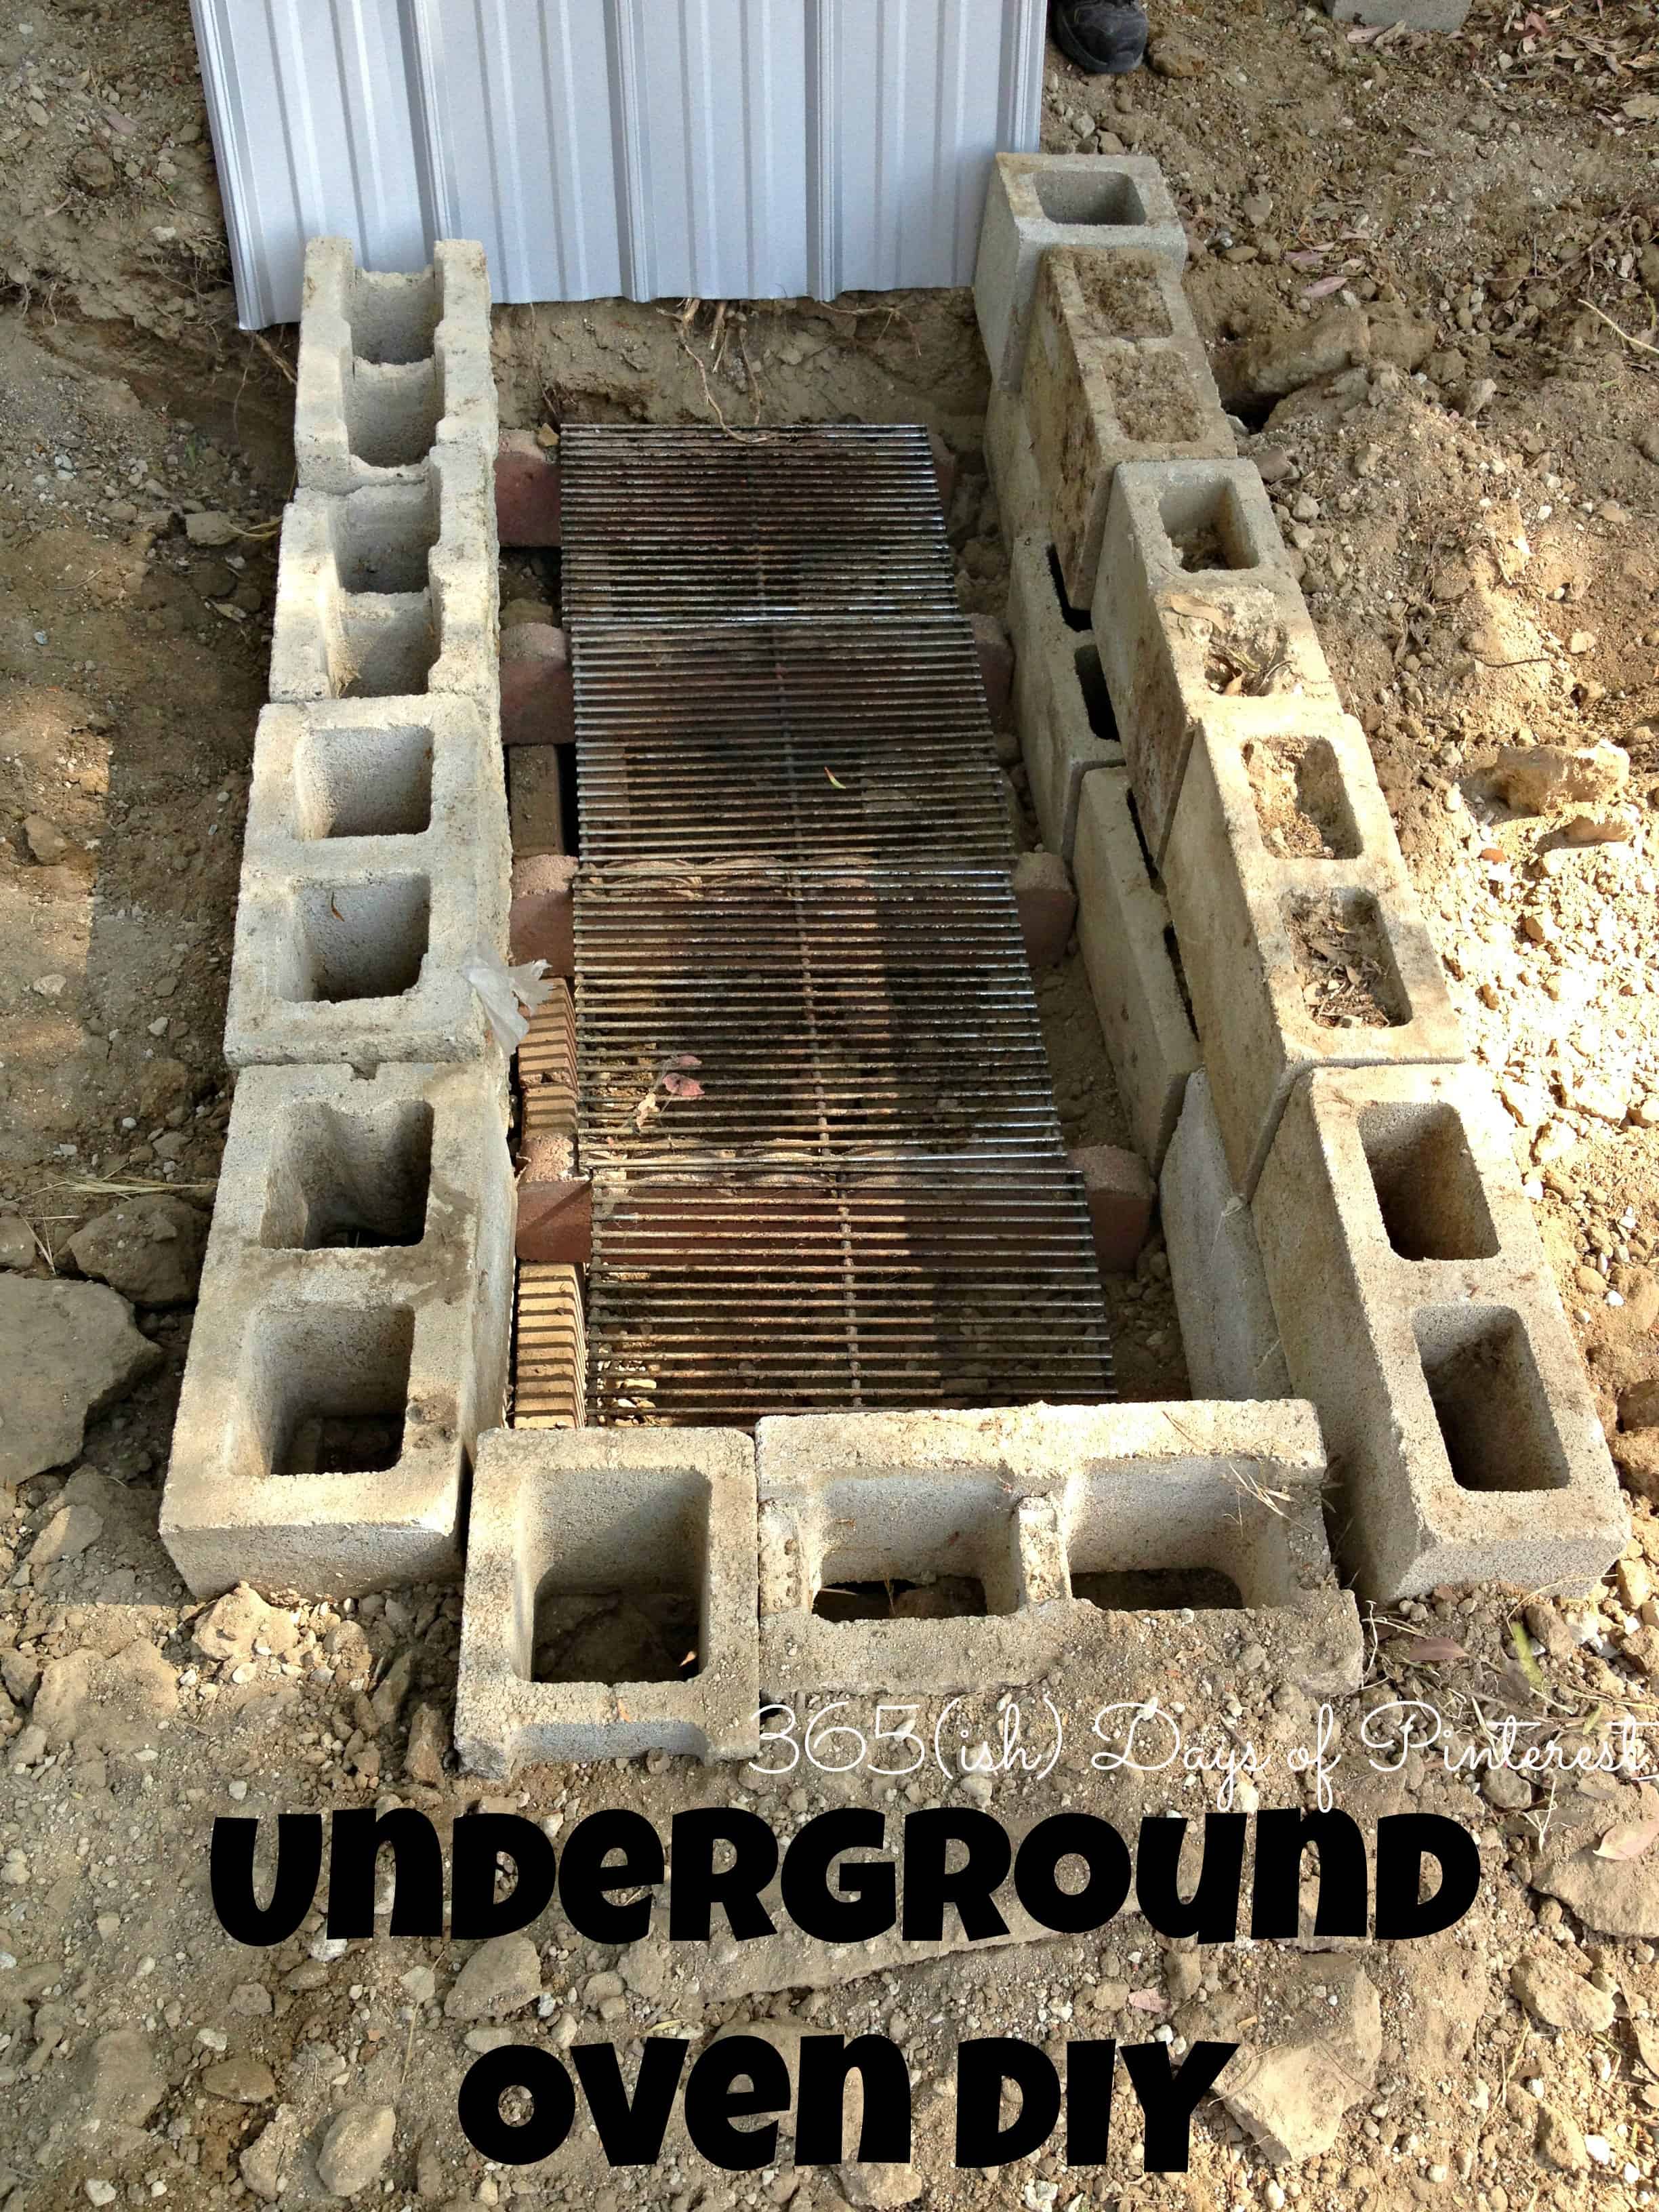 An Underground Oven, Underground Fire Pit Cooking